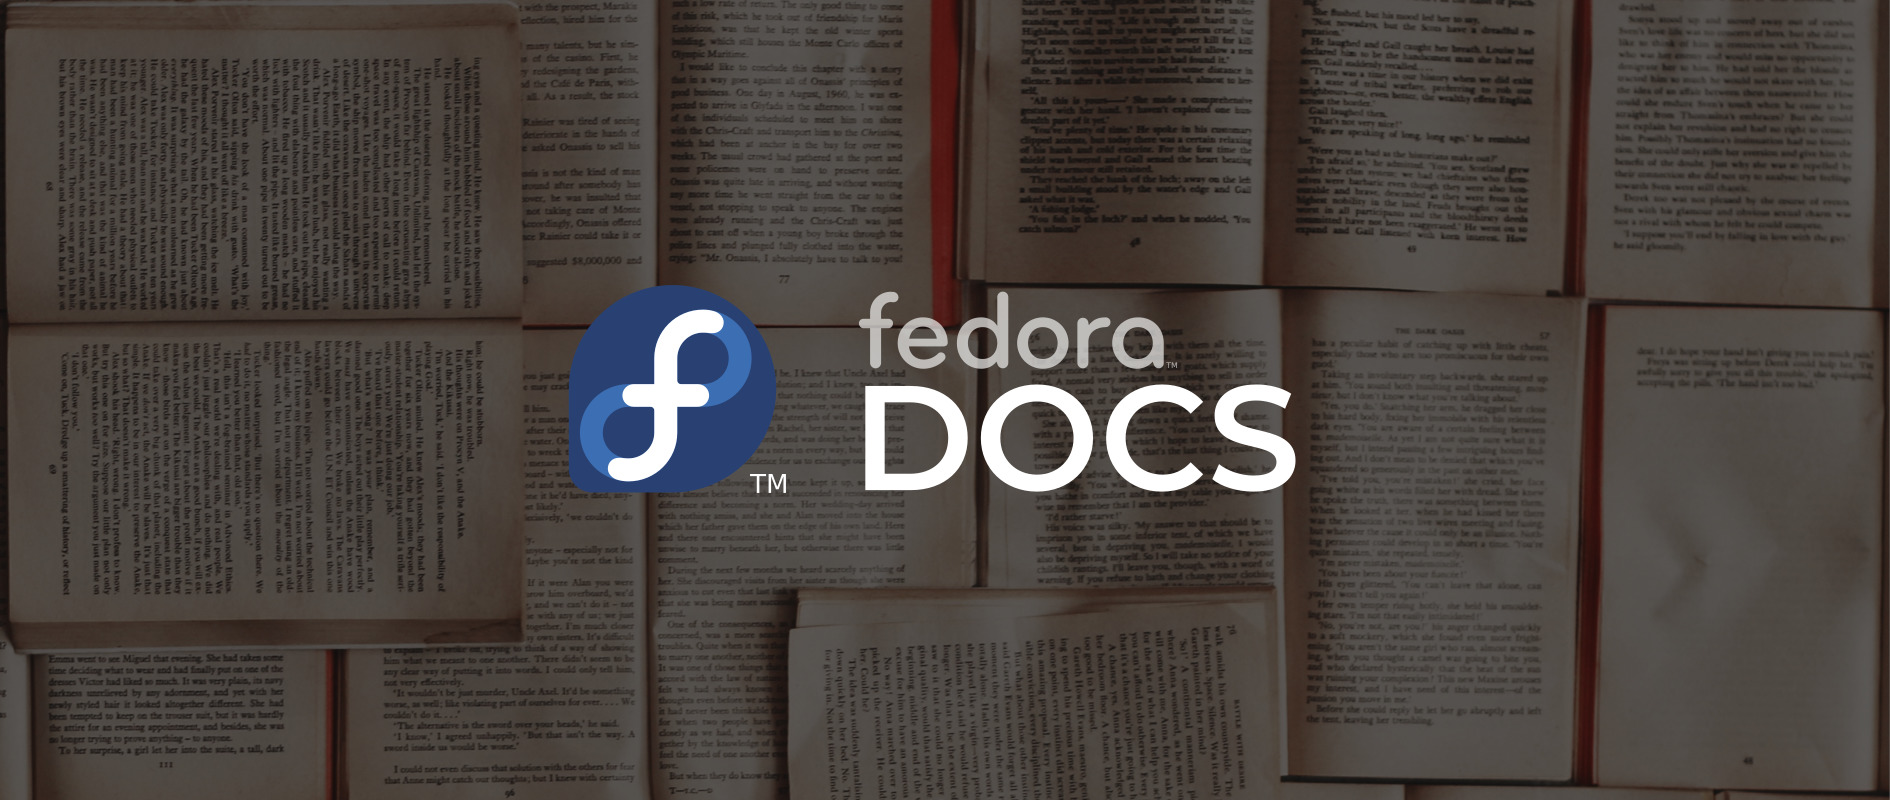 Logo Dokumentačního týmu Fedory s obchodní značkou; stránky knihy v pozadí.